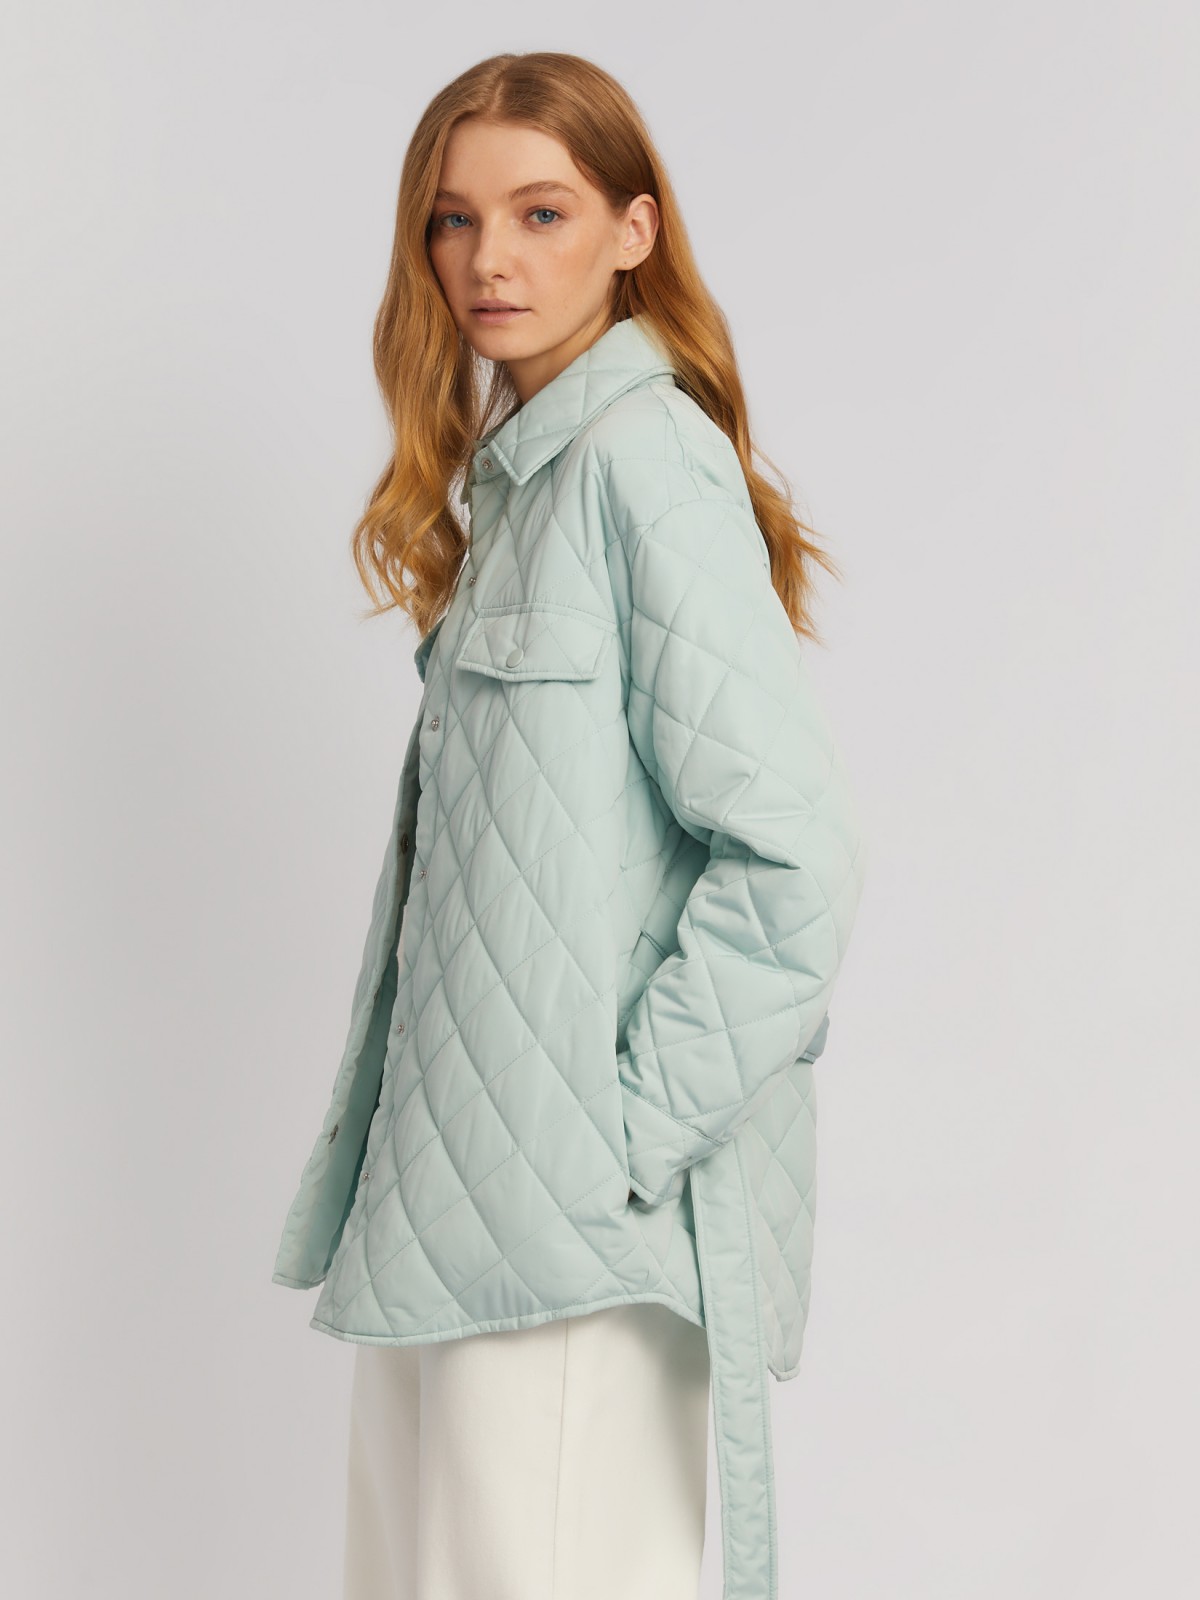 Утеплённая стёганая куртка-рубашка на синтепоне с поясом zolla 024135102134, цвет мятный, размер XS - фото 3